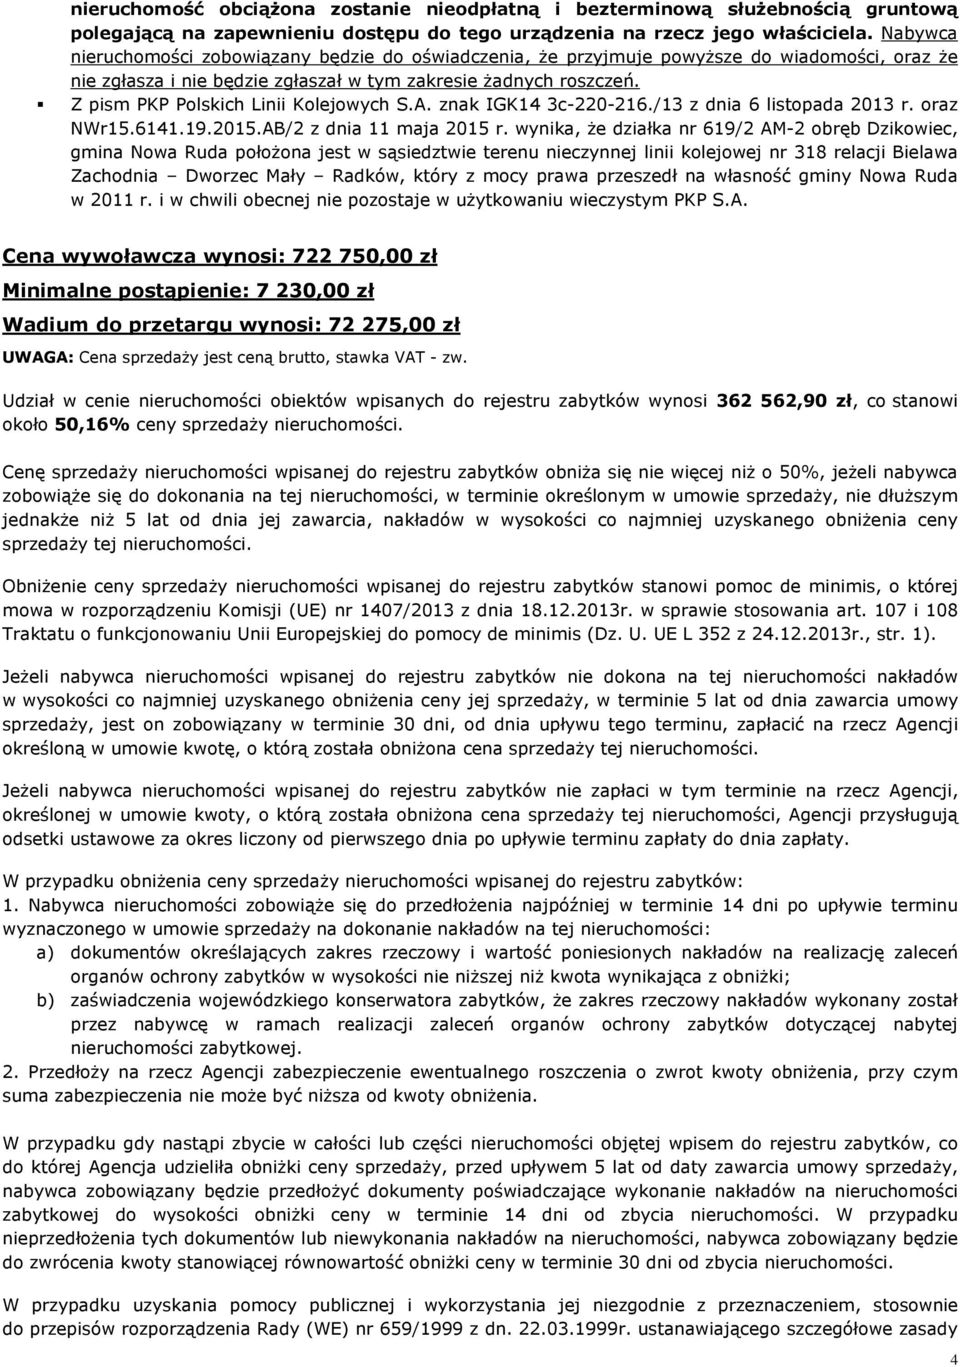 Z pism PKP Polskich Linii Kolejowych S.A. znak IGK14 3c-220-216./13 z dnia 6 listopada 2013 r. oraz NWr15.6141.19.2015.AB/2 z dnia 11 maja 2015 r.